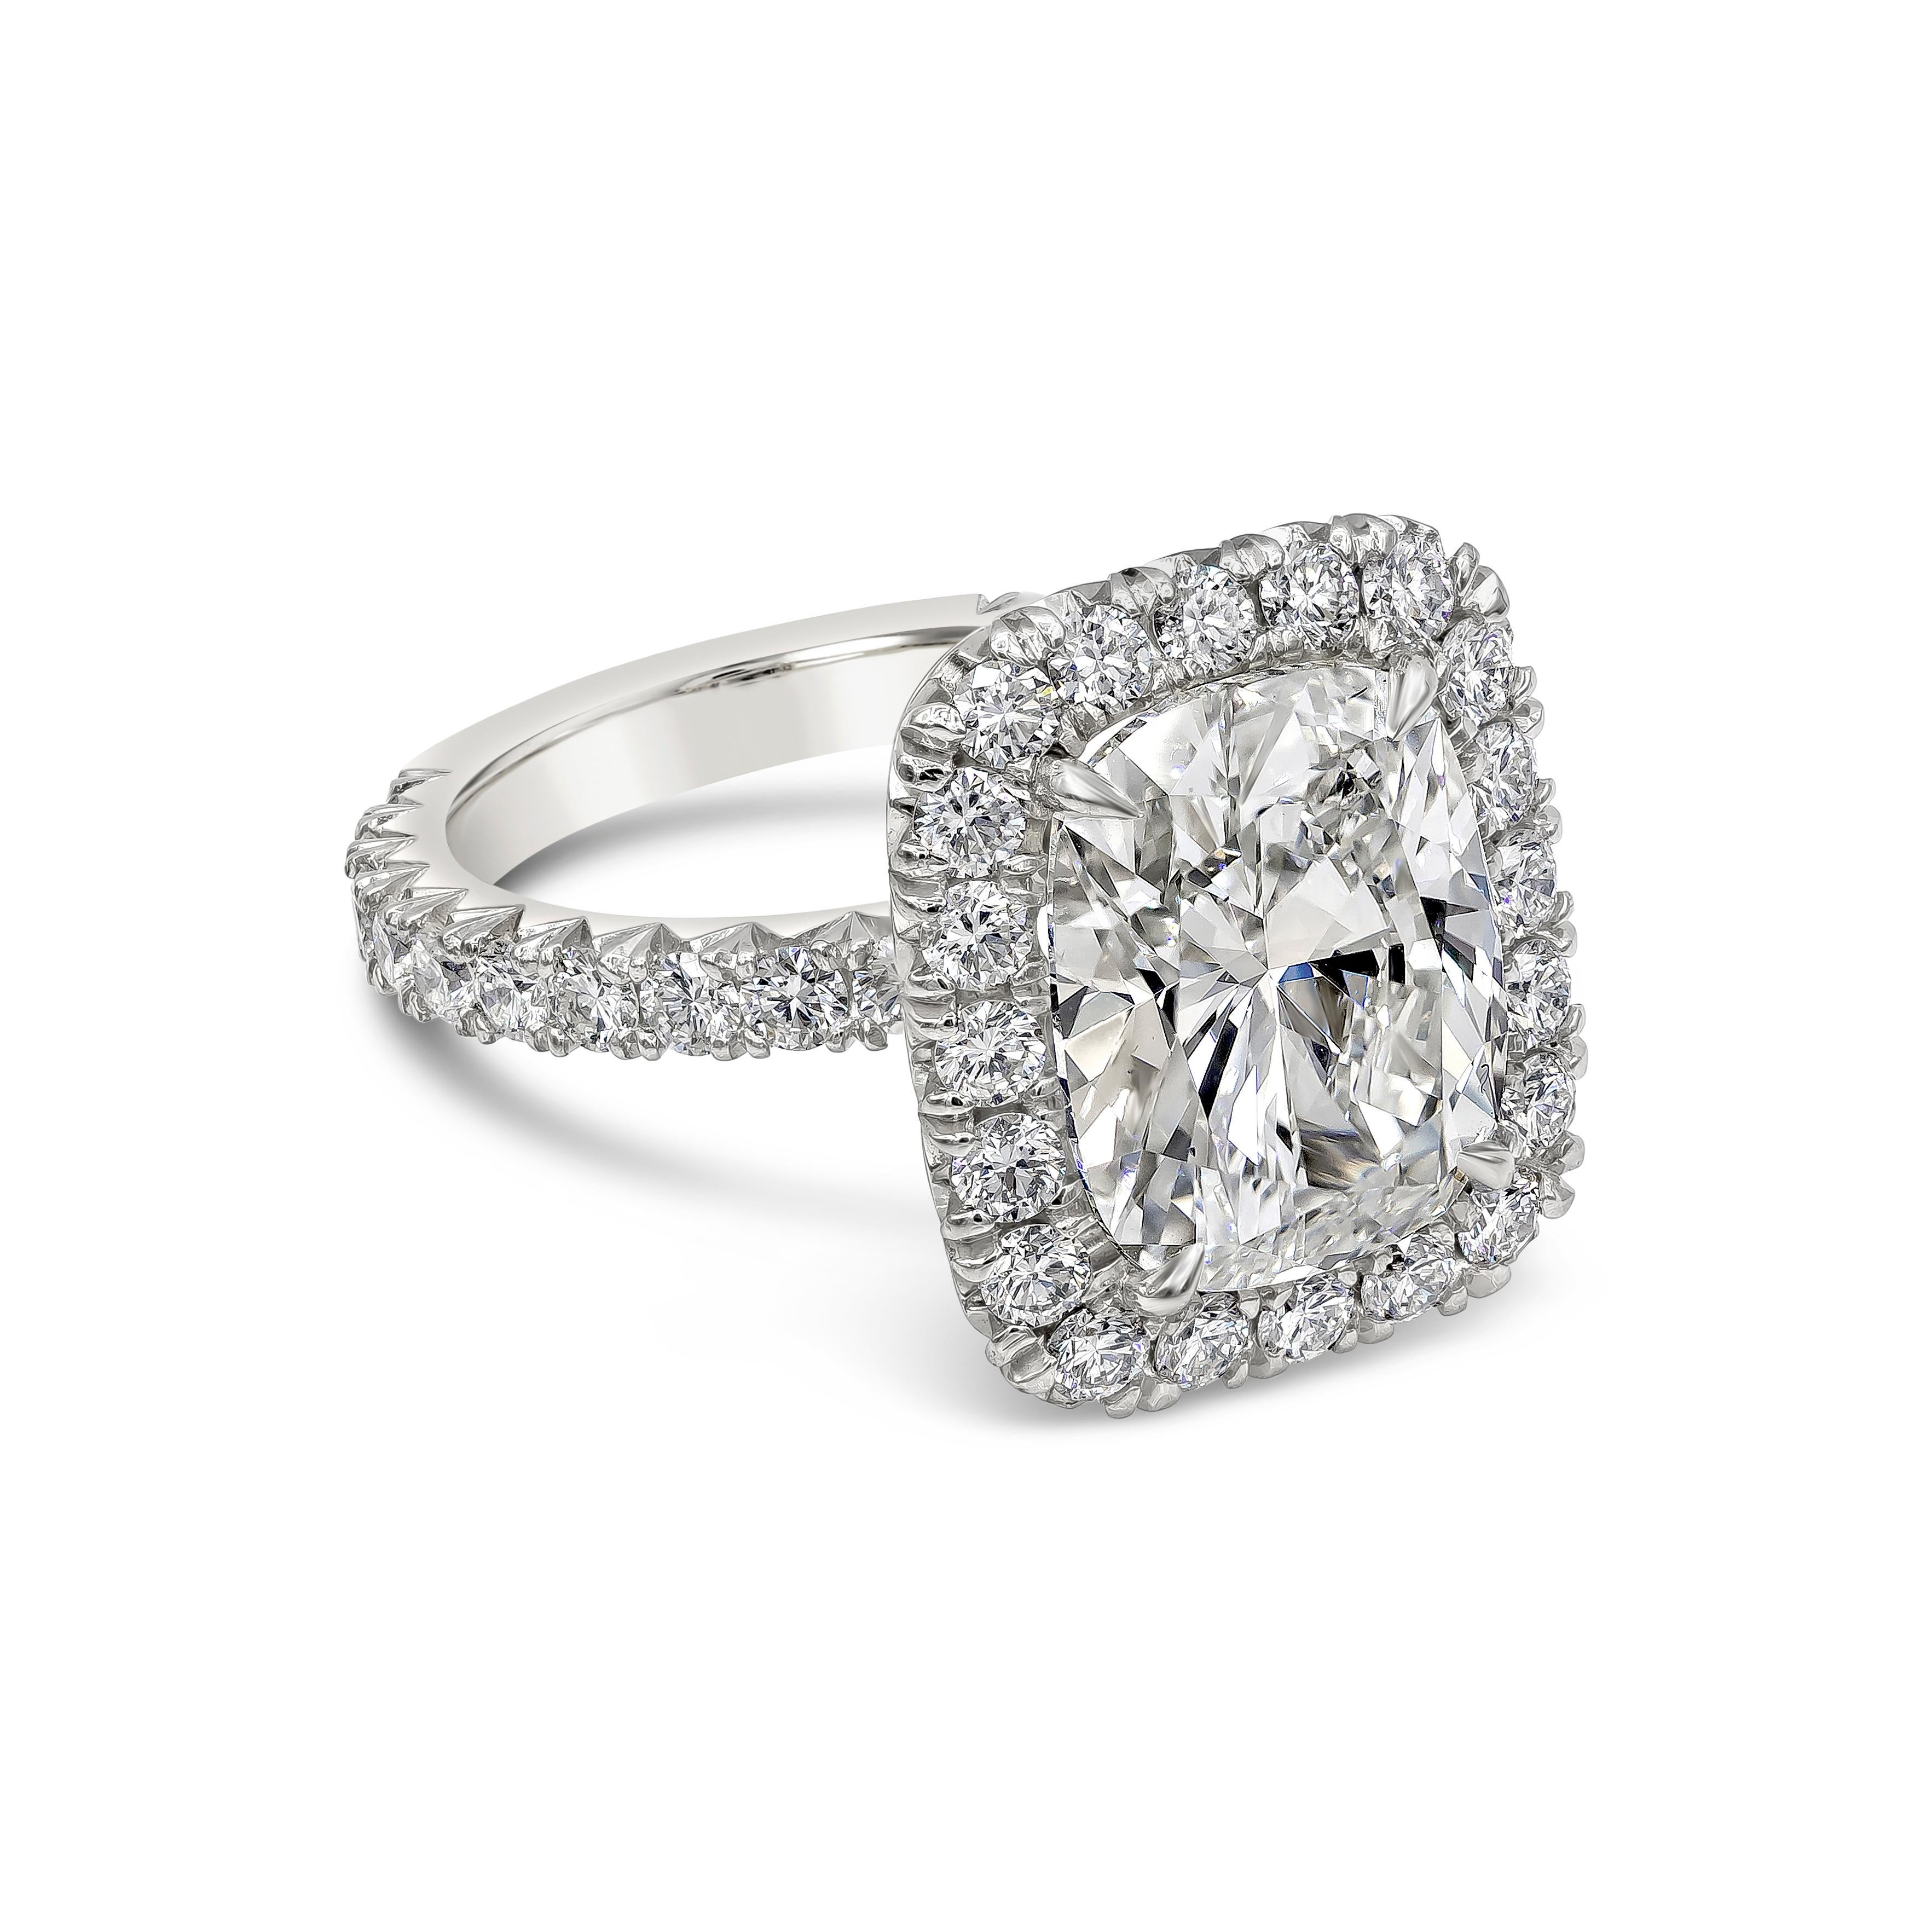 Une bague de fiançailles classique mettant en valeur un diamant taille coussin de 5,01 carats, certifié par le GIA de couleur J et de pureté VS2. La pierre centrale est entourée d'une seule rangée de diamants ronds de taille brillant en halo et la